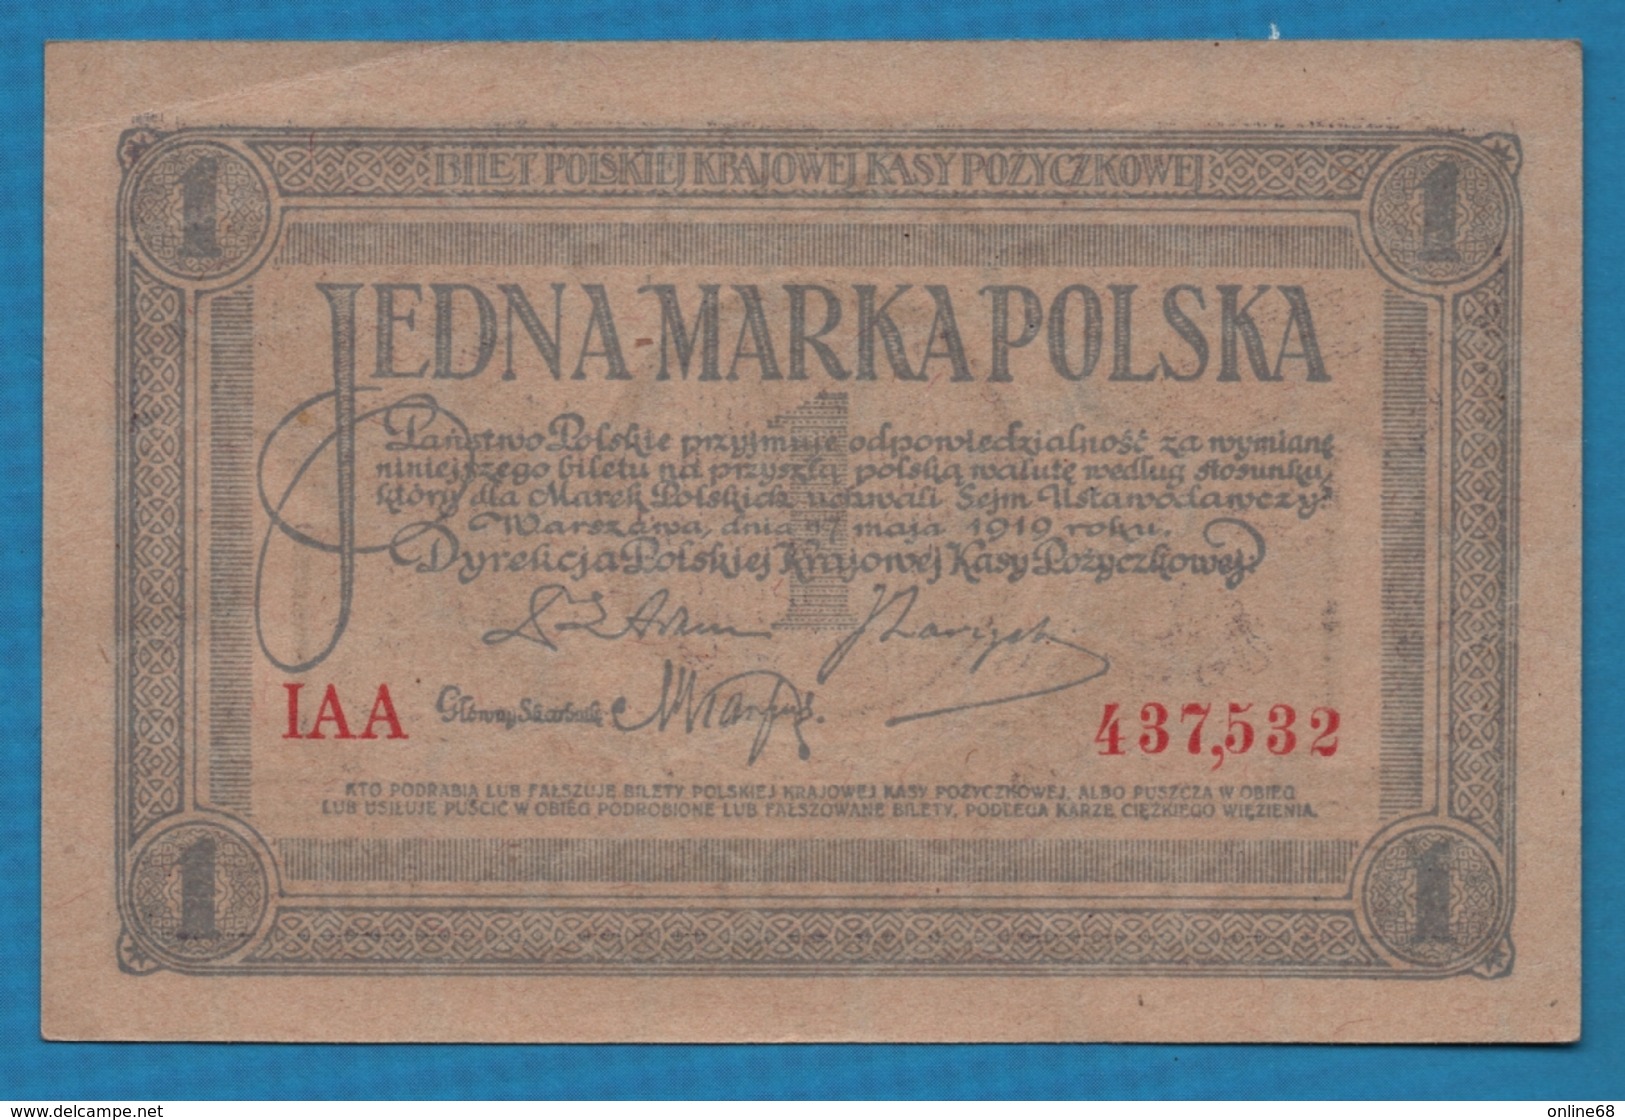 POLAND 1 Marka Polska	17.05.1919	Serie IAA 437,532 P# 19 Polska Krajowa Kasa Pożyczkowa - Pologne